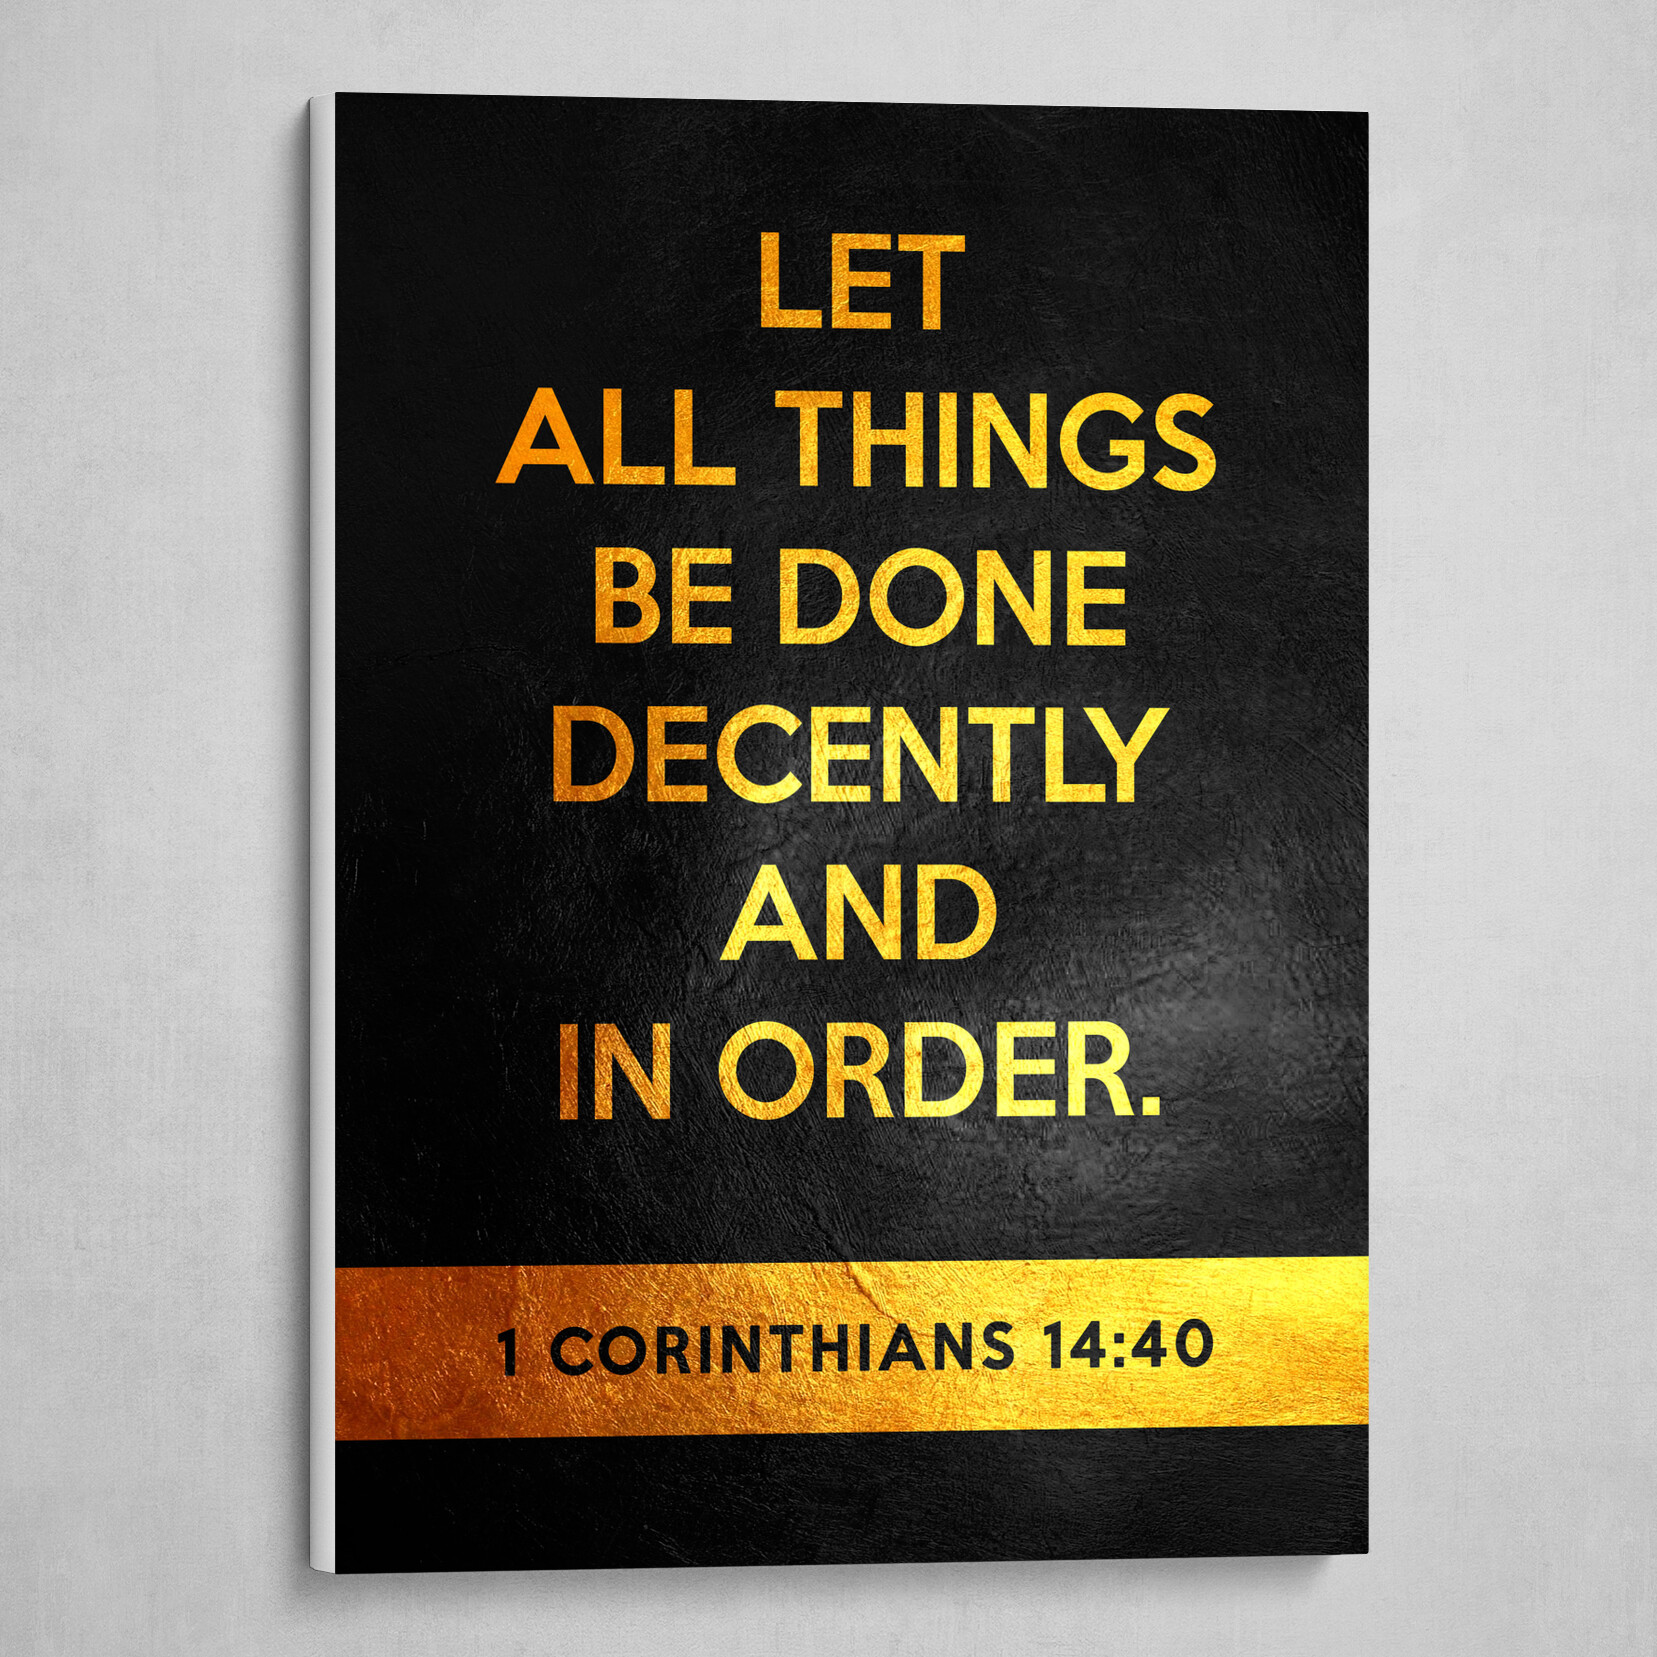 1 Corinthians 14:40 Bible Verse Text Art